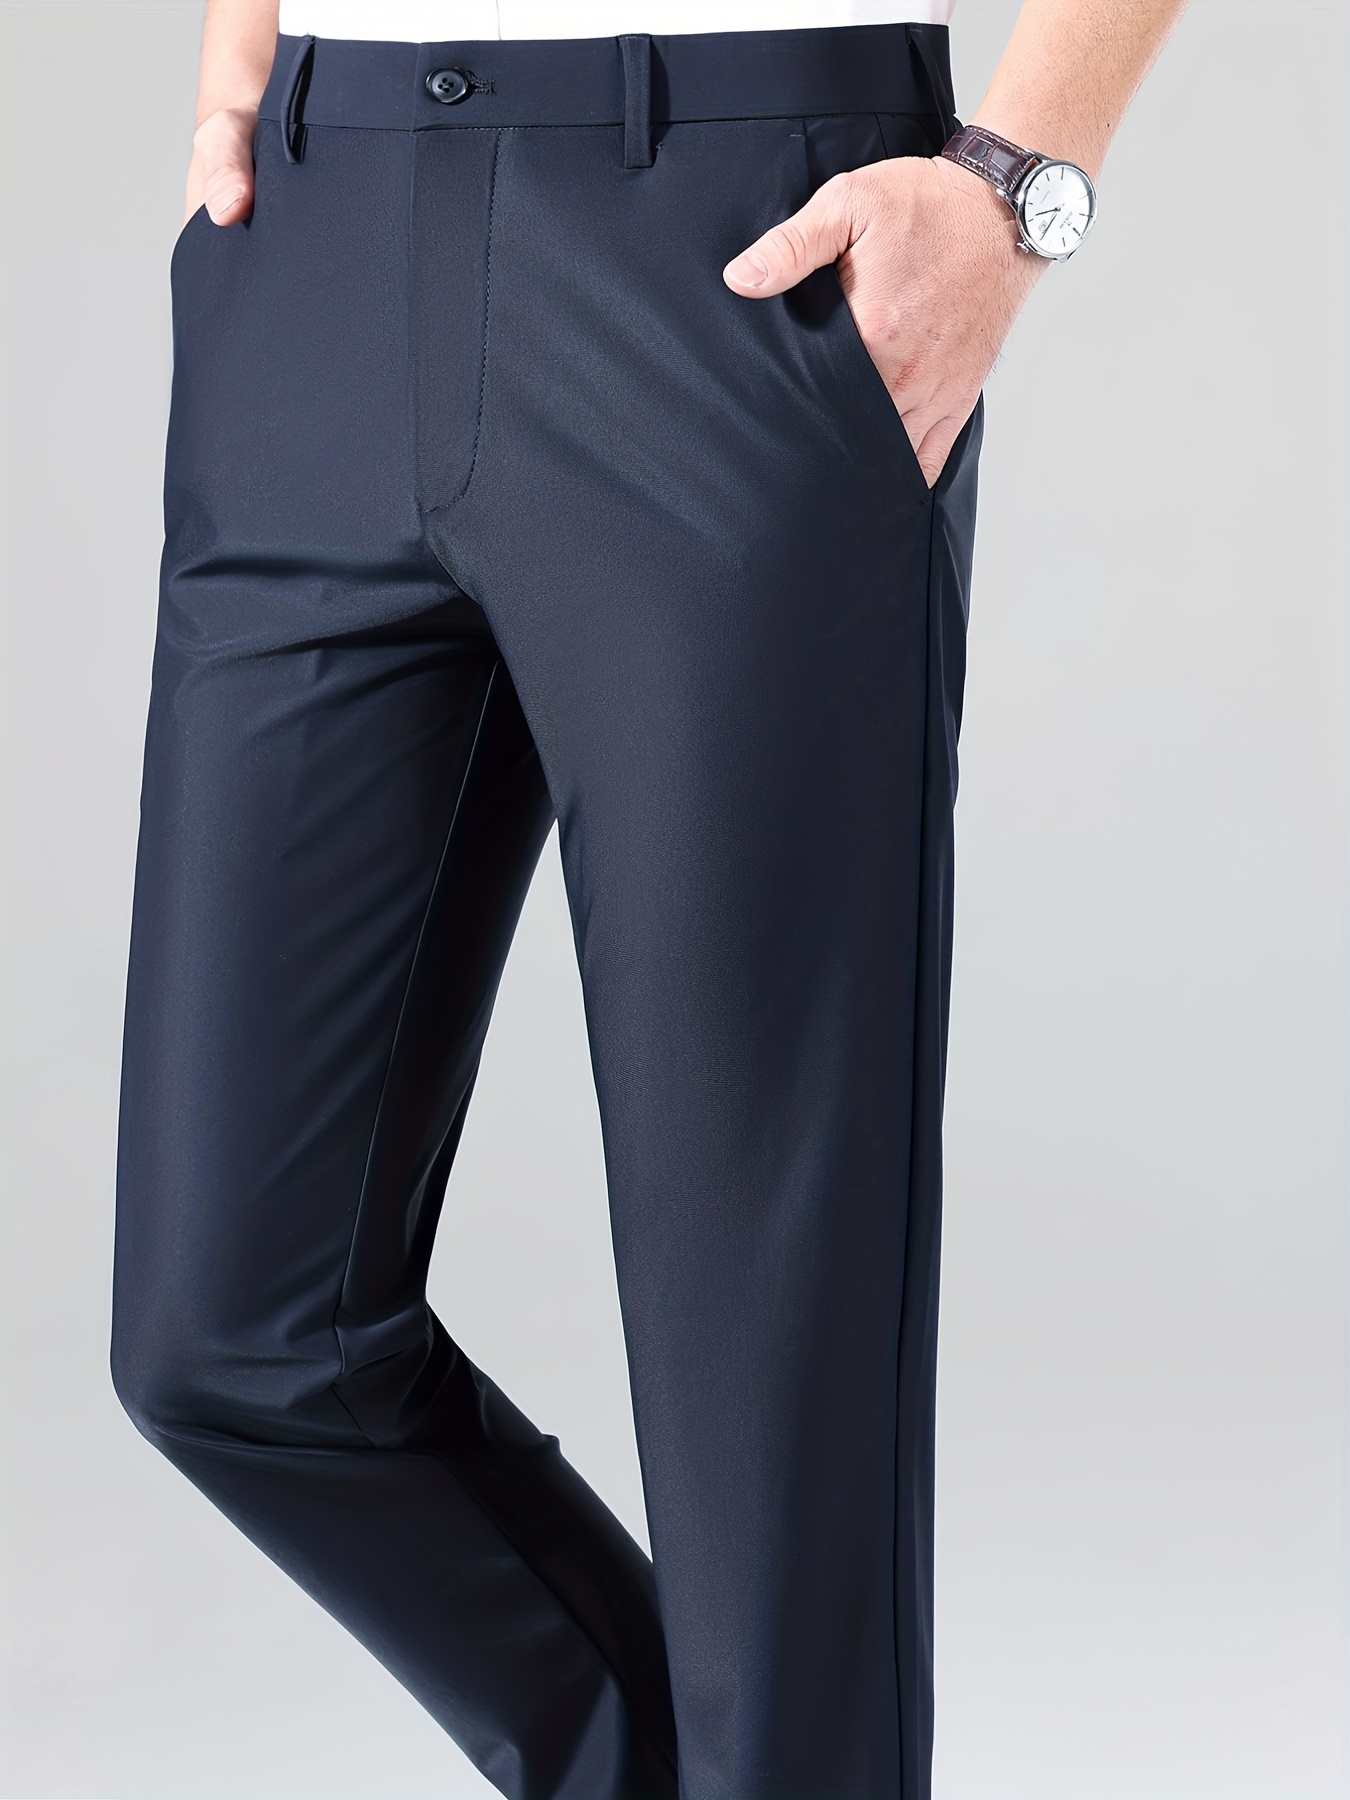 Pantalones de vestir para hombre, ajuste clásico con cintura elástica,  pantalones de vestir elásticos para hombre